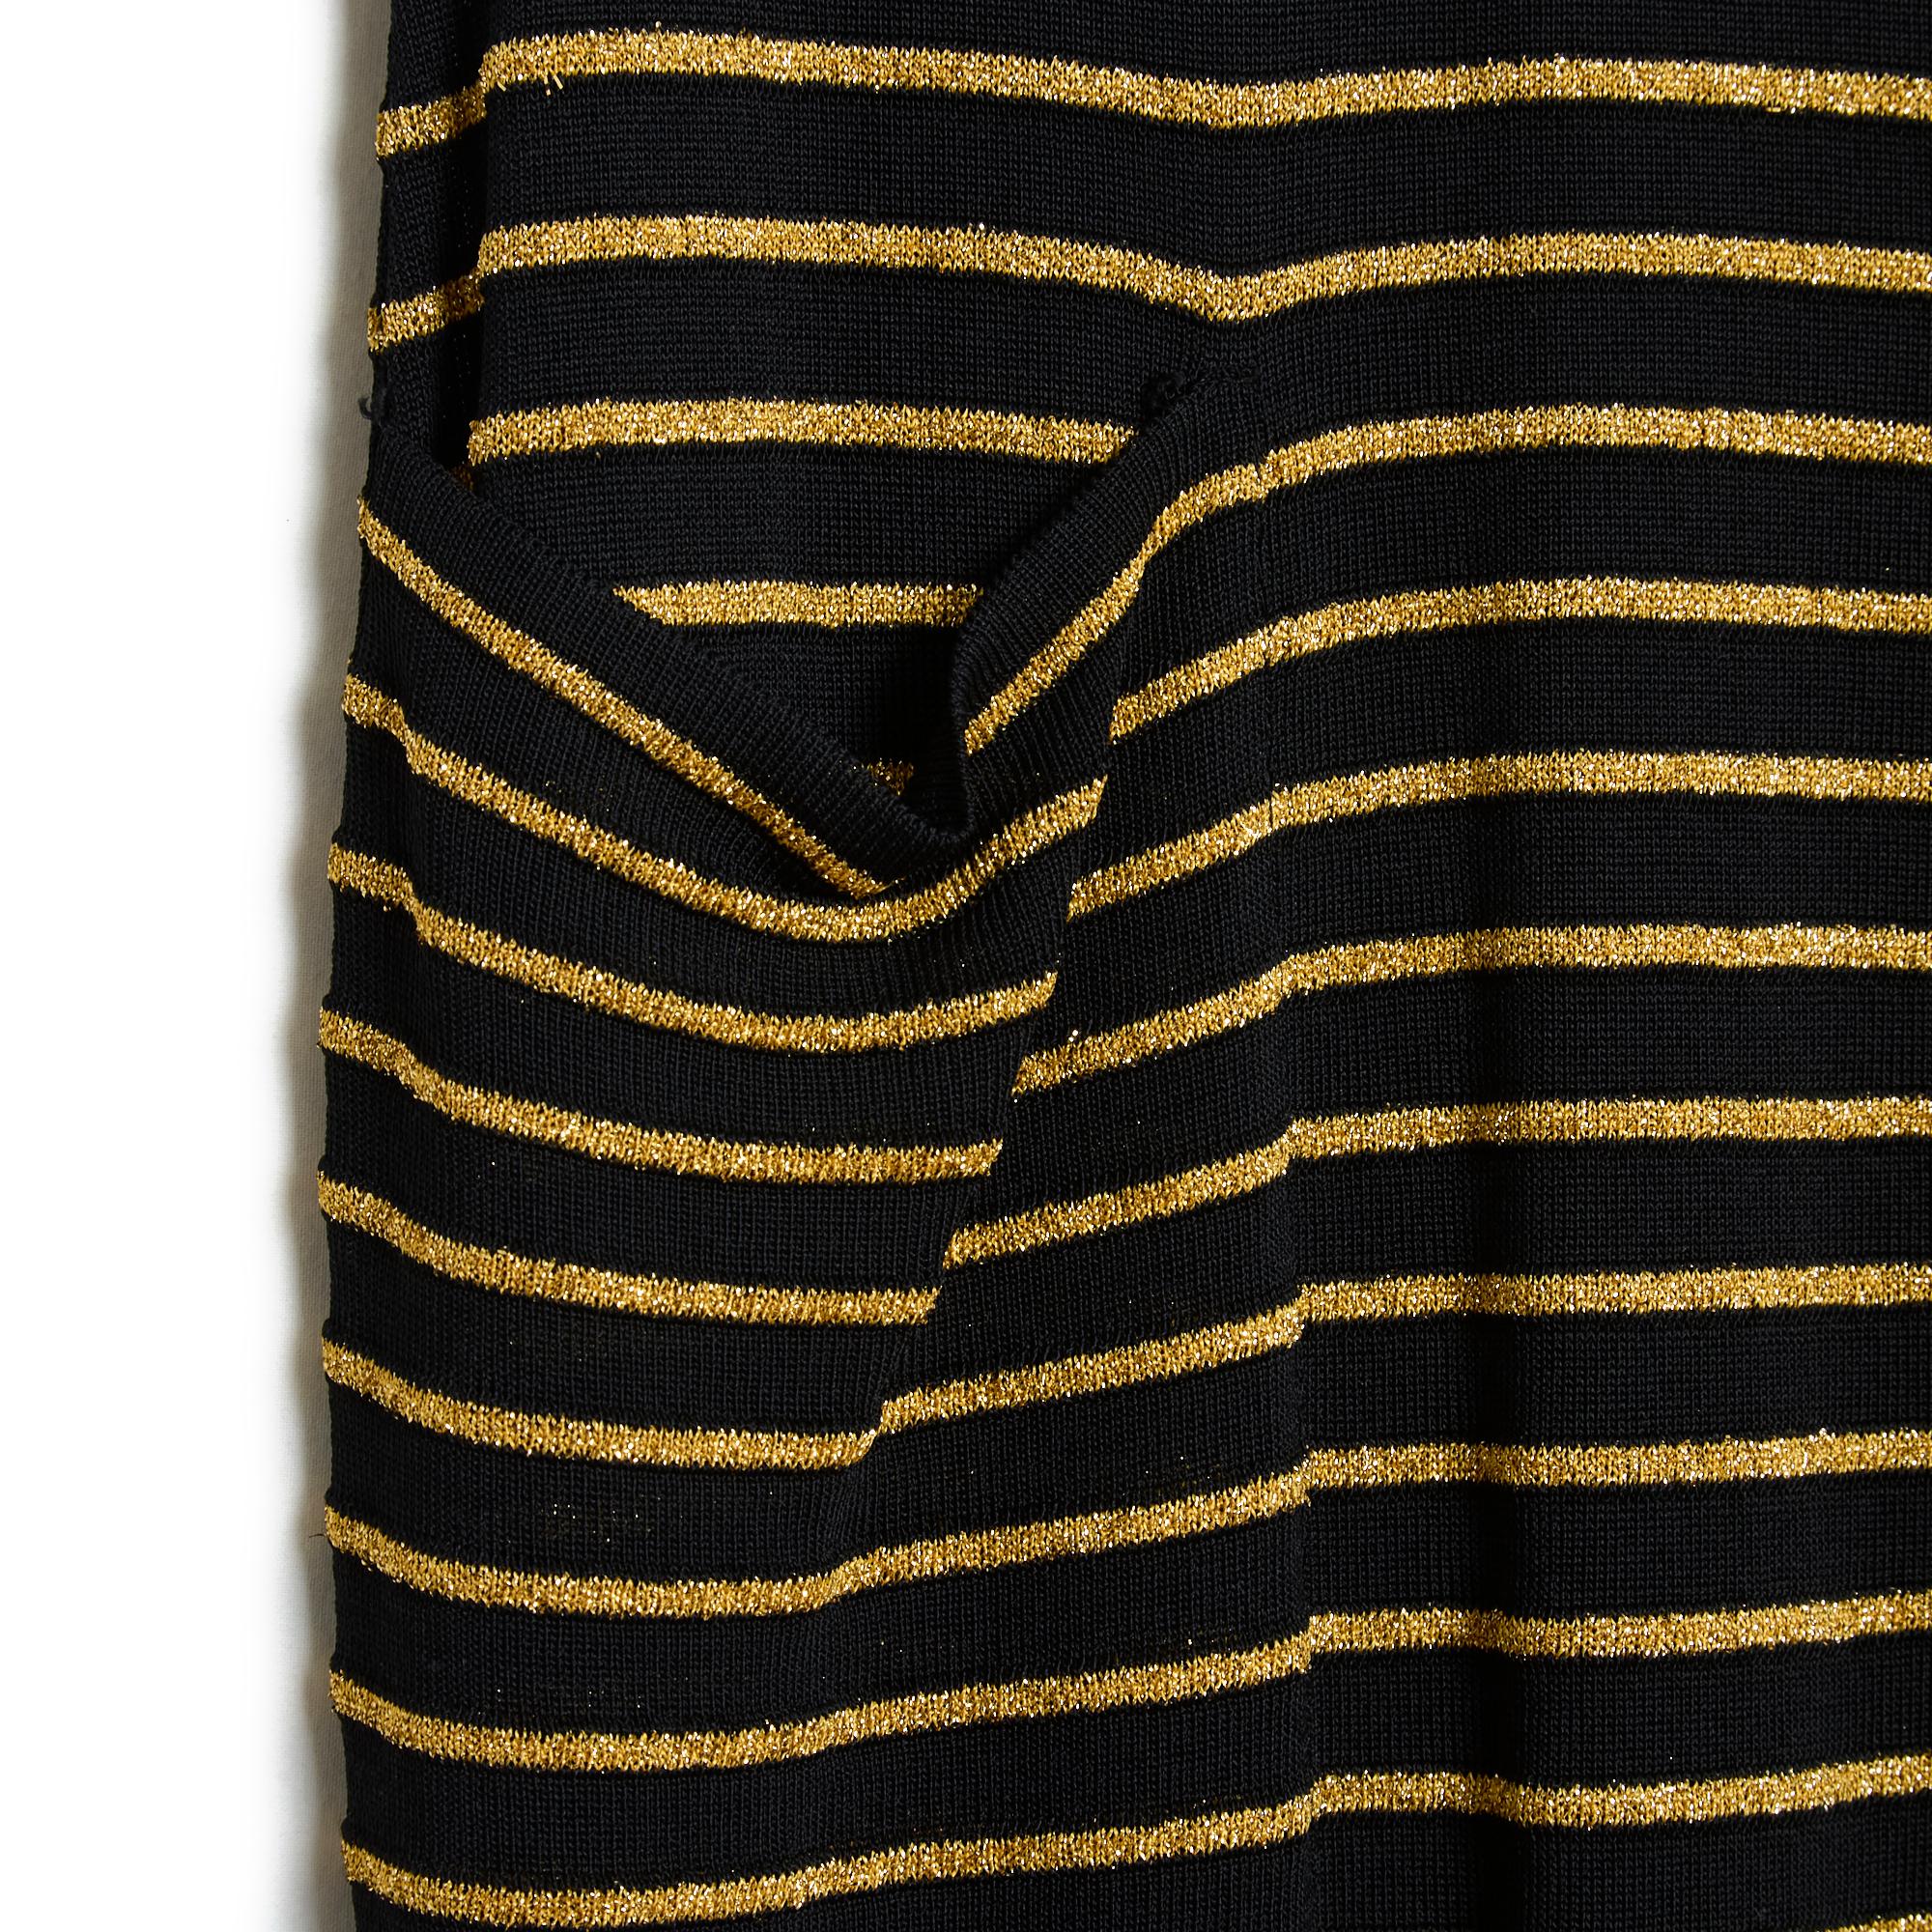 Yves Saint Laurent langes Kleid um 1990 aus schwarzem Viskosestrick mit goldenem Lurex, breiter Bootsausschnitt, 2 aufgesetzte Taschen auf der Hüfte, kurze Ärmel, ungefüttert (daher leicht transparent). Kein MATERIAL oder Größenetikett mehr, aber